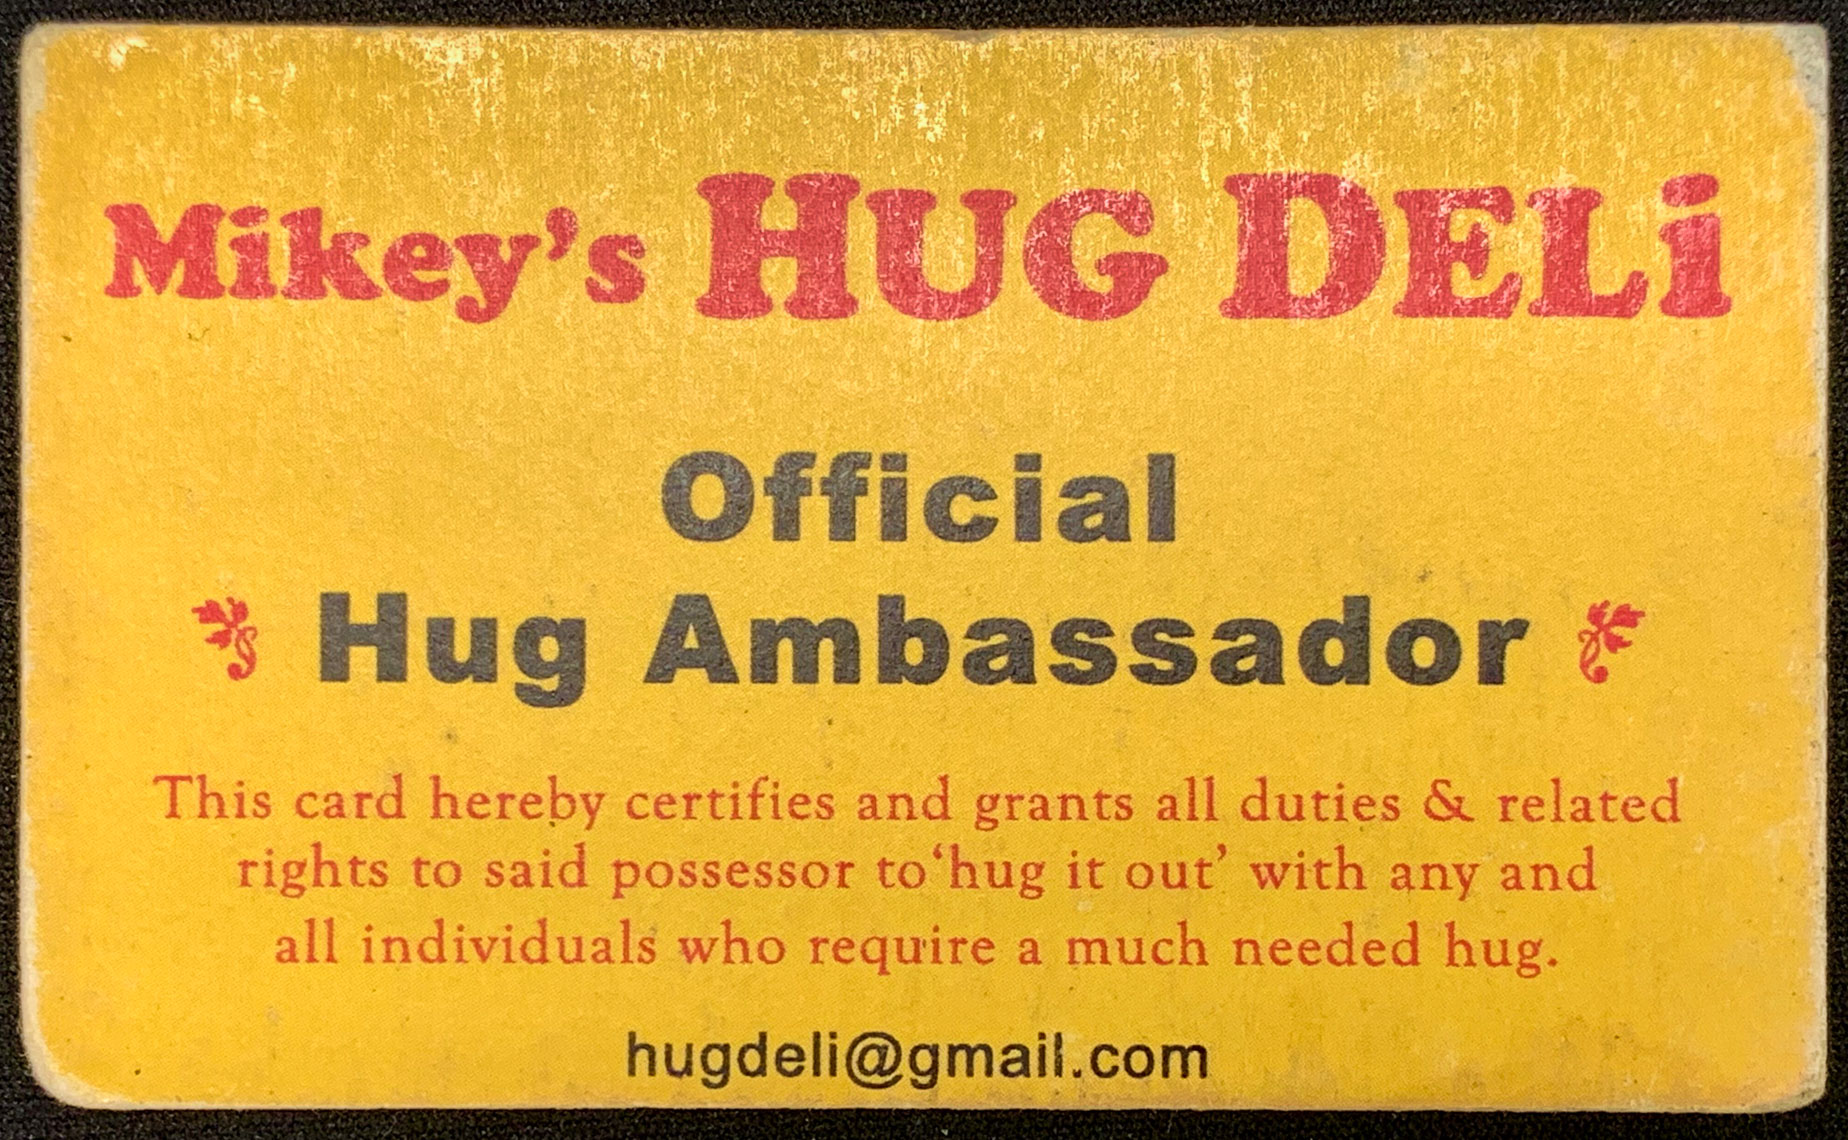 2009 - Designated as Official Hug Ambassador